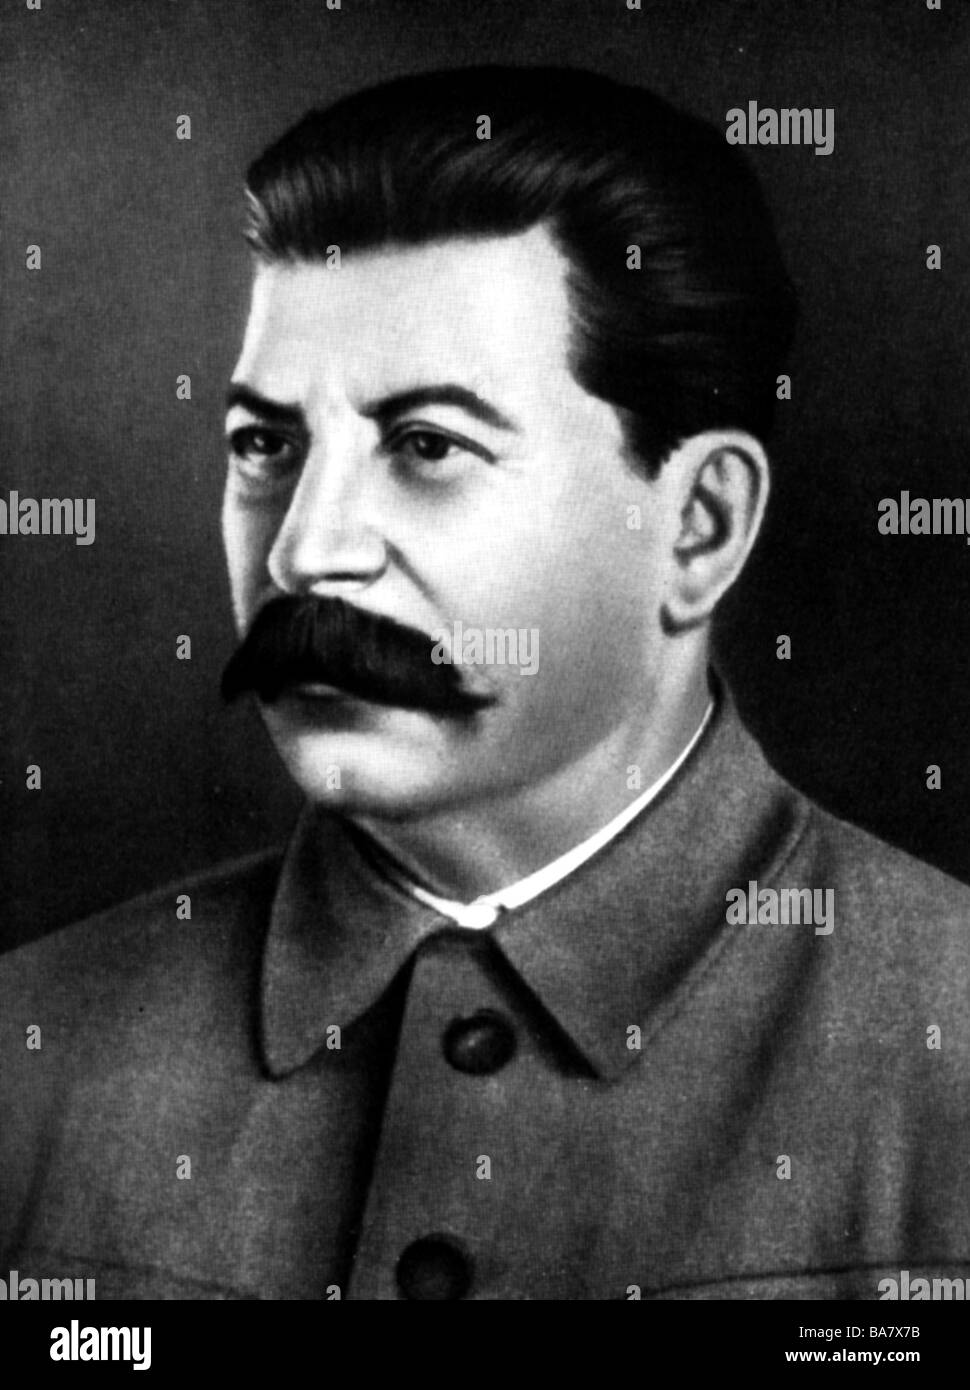 Stalin, Joseph Vissarionovich, 18.12.1879 - 5.3.1953, statista sovietico, Segretario generale del Partito Comunista dell'Unione Sovietica 1922 - 1953, ritratto, pittura, Foto Stock